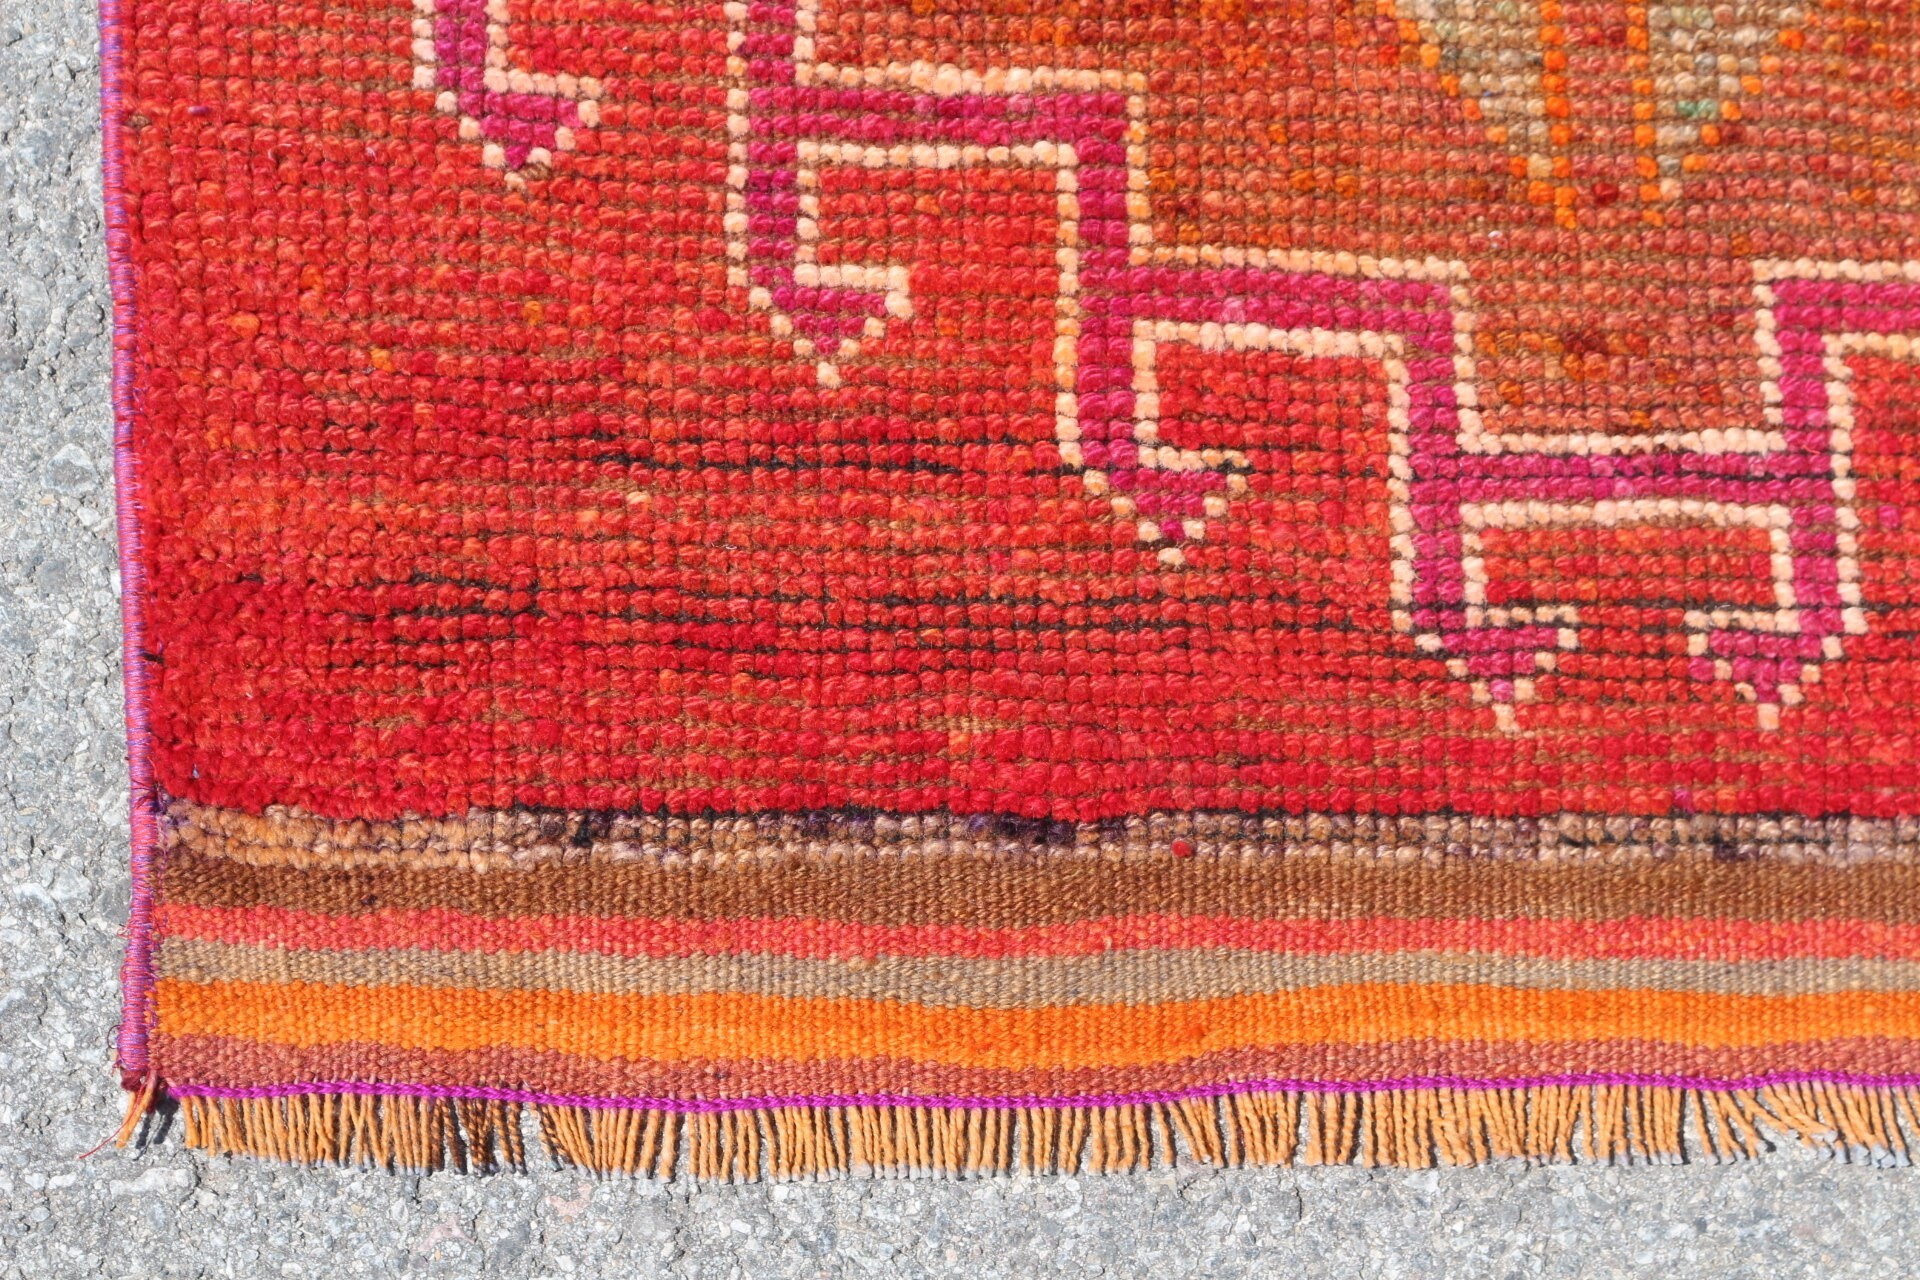 Red Moroccan Rug, 3x11.1 ft Runner Rug, Vintage Rug, Rugs for Runner, Corridor Rug, Turkish Rug, Wool Rugs, Office Rugs